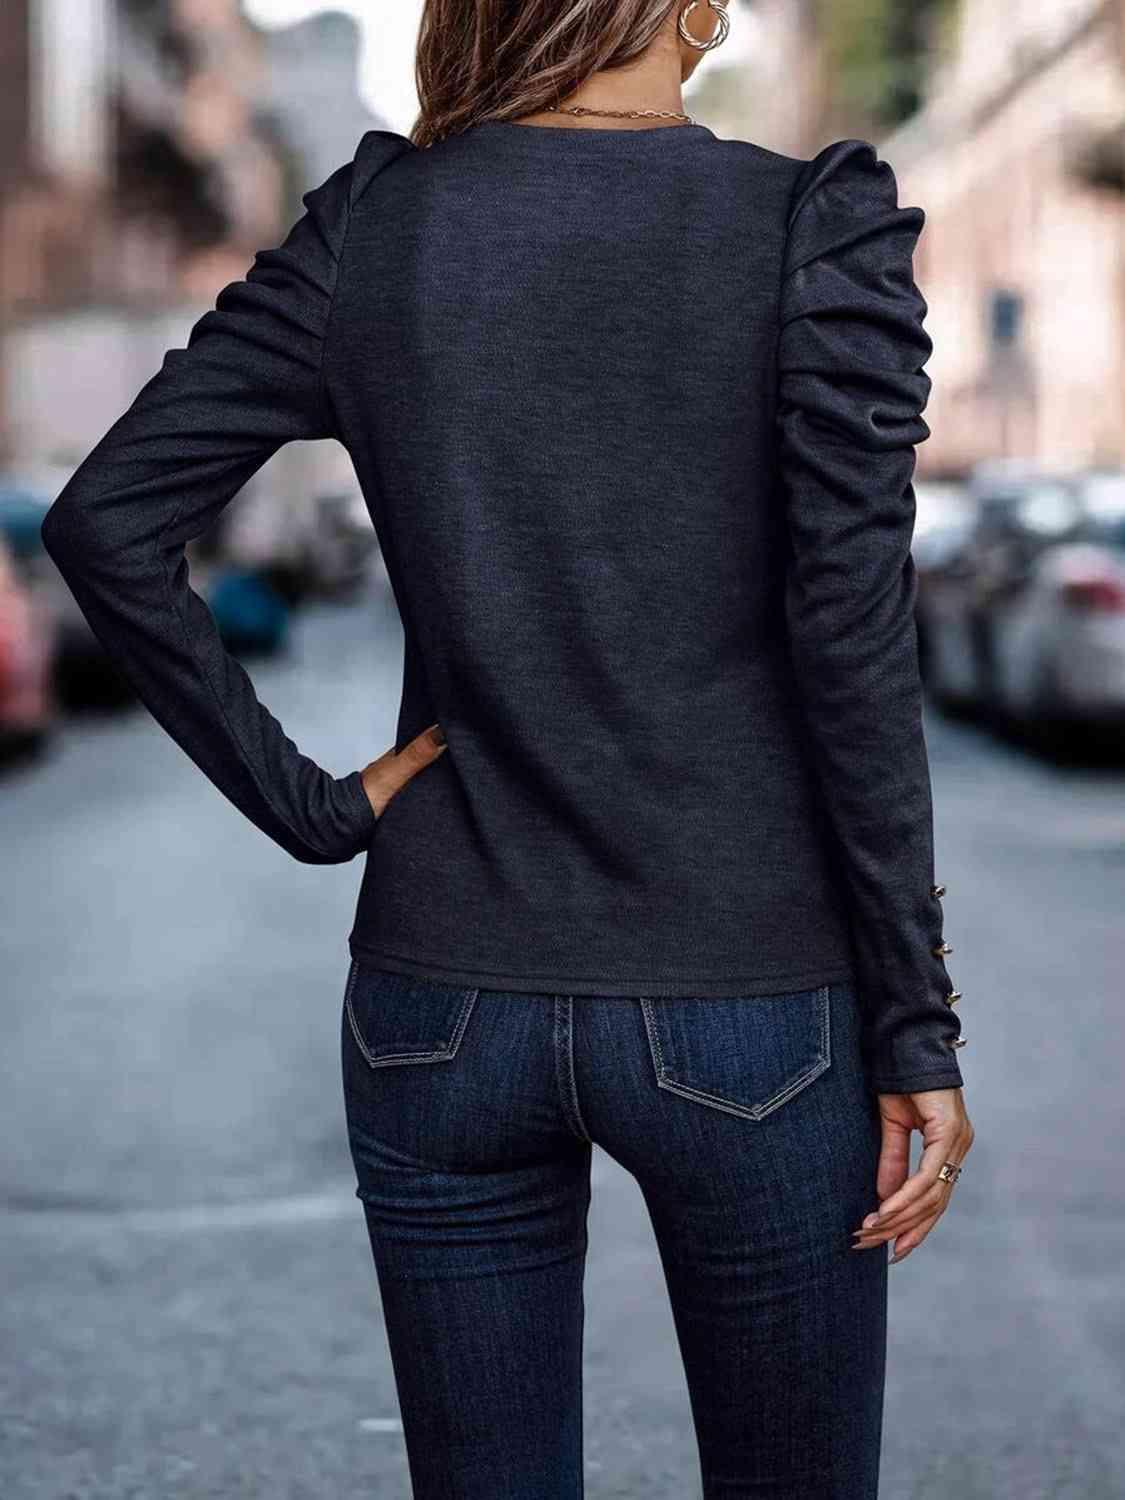 Bona Fide Fashion - Decorative Button Puff Sleeve T-Shirt - Women Fashion - Bona Fide Fashion